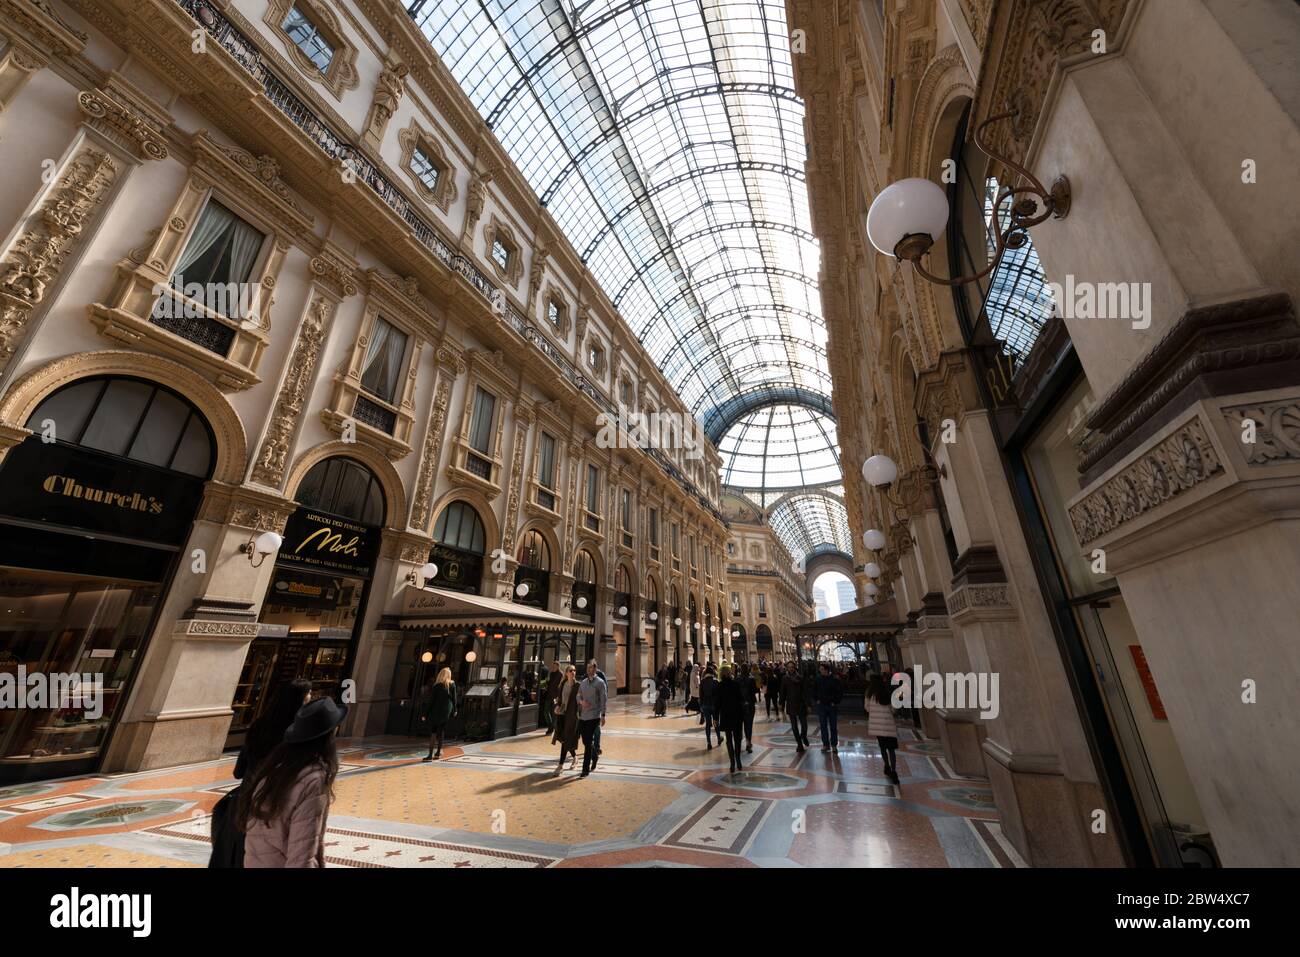 MILANO, ITALIA - 16 MARZO 2018: Immagine orizzontale dell'interno della Galleria Vittorio Emanuele II, un antico centro commerciale di Milano Foto Stock